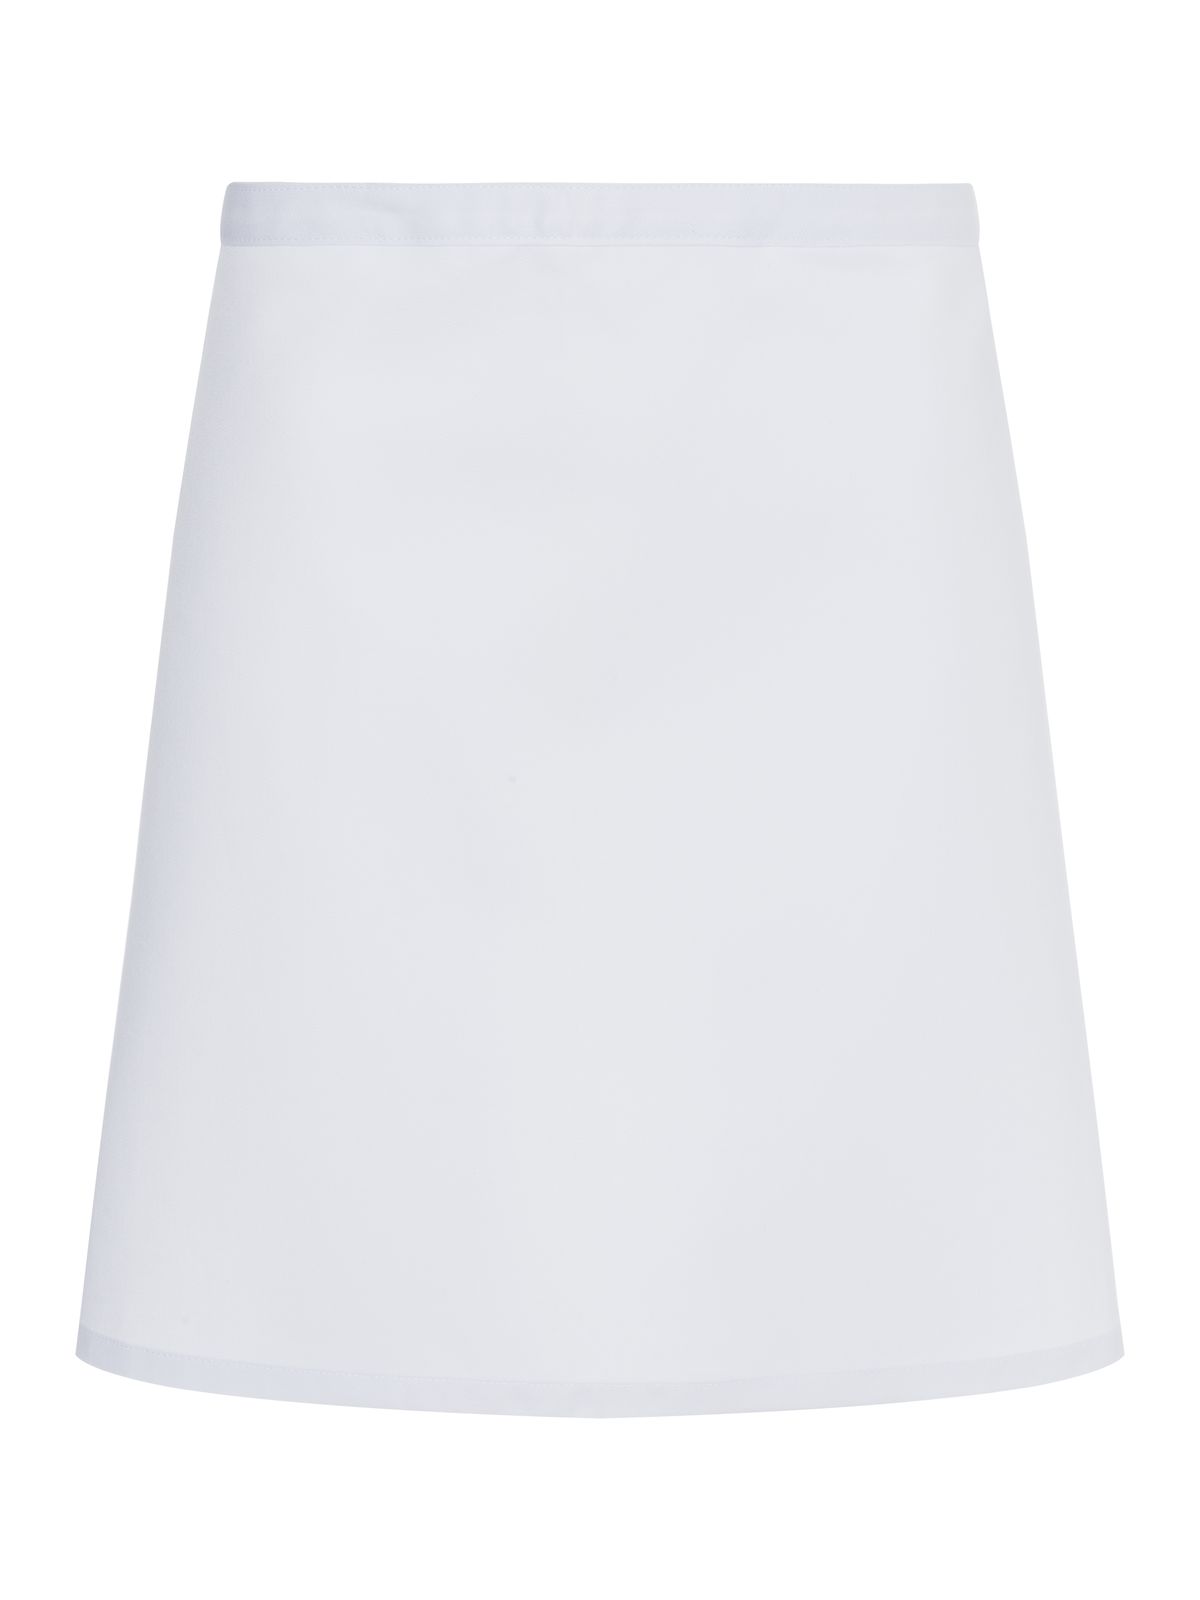 apron-basic-white.webp